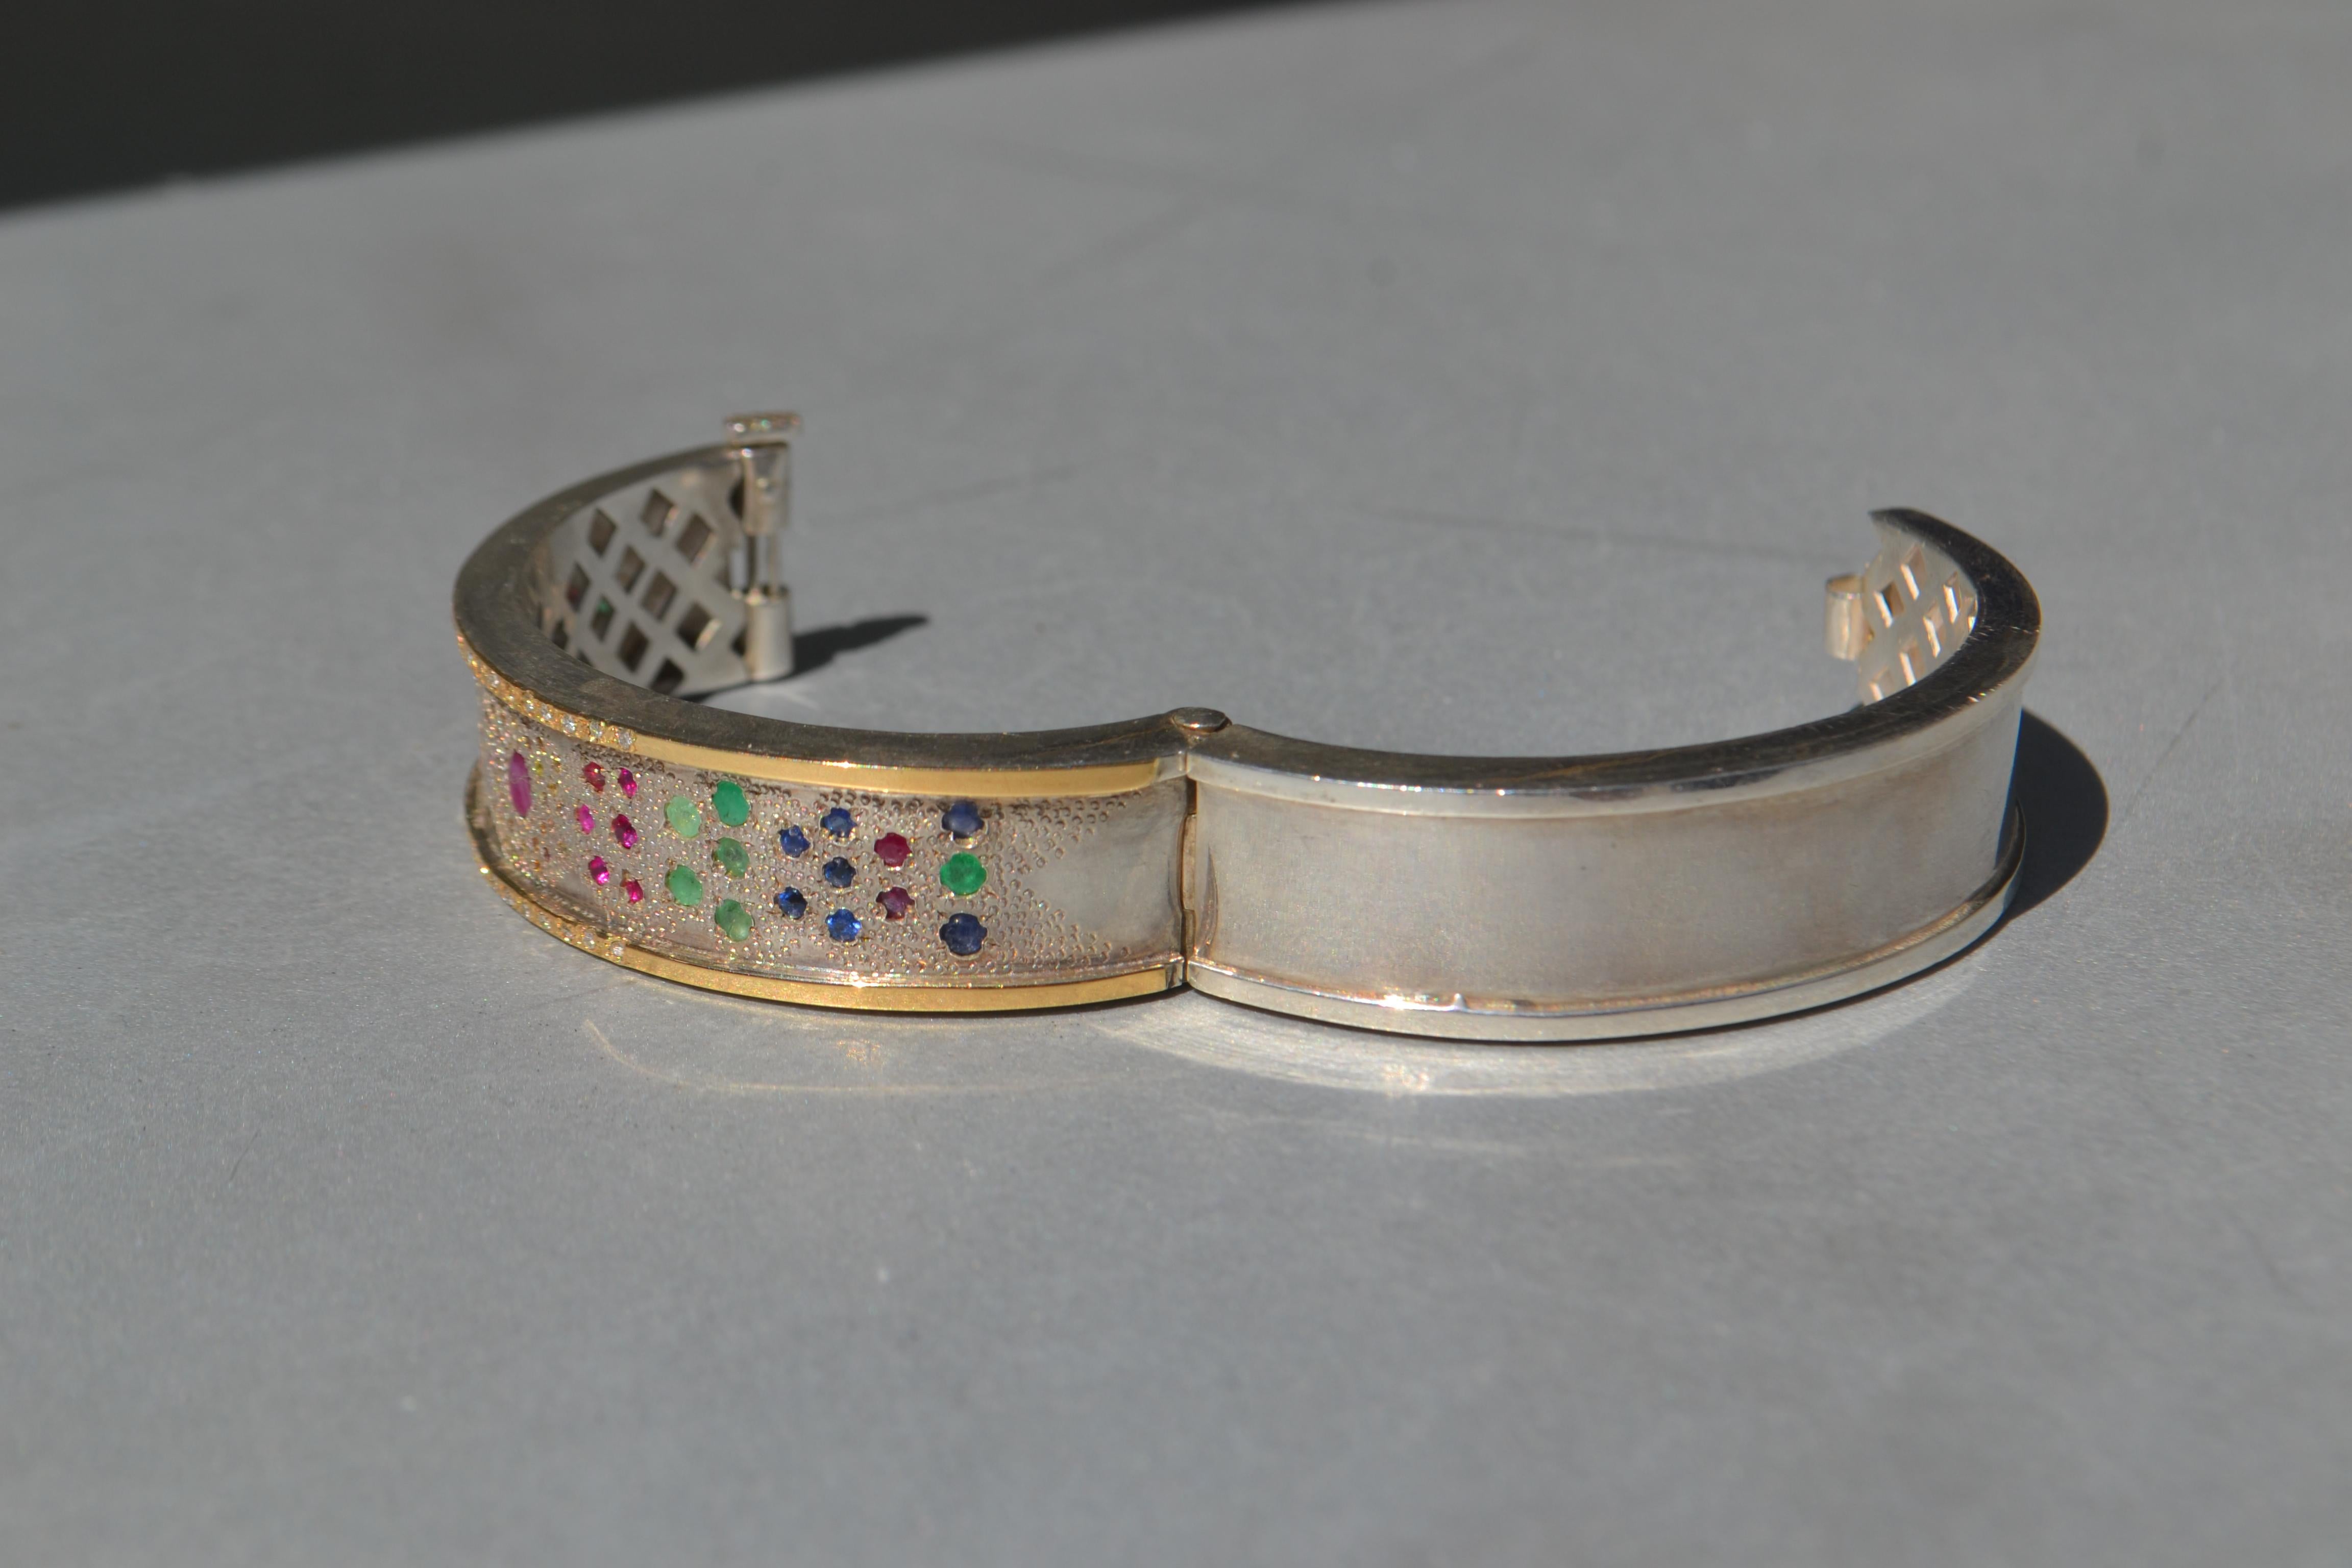 Dieses Armband ist eine arabische Inspiration Design mit einer Granit-Textur in der Basis, und mit incrust-ion von Edelsteinen wie Smaragd, Saphire, Rubine, sein Gewicht seine 25 Gramm zwischen Gold18k und Silber und in den Seiten hat es eine Rolle